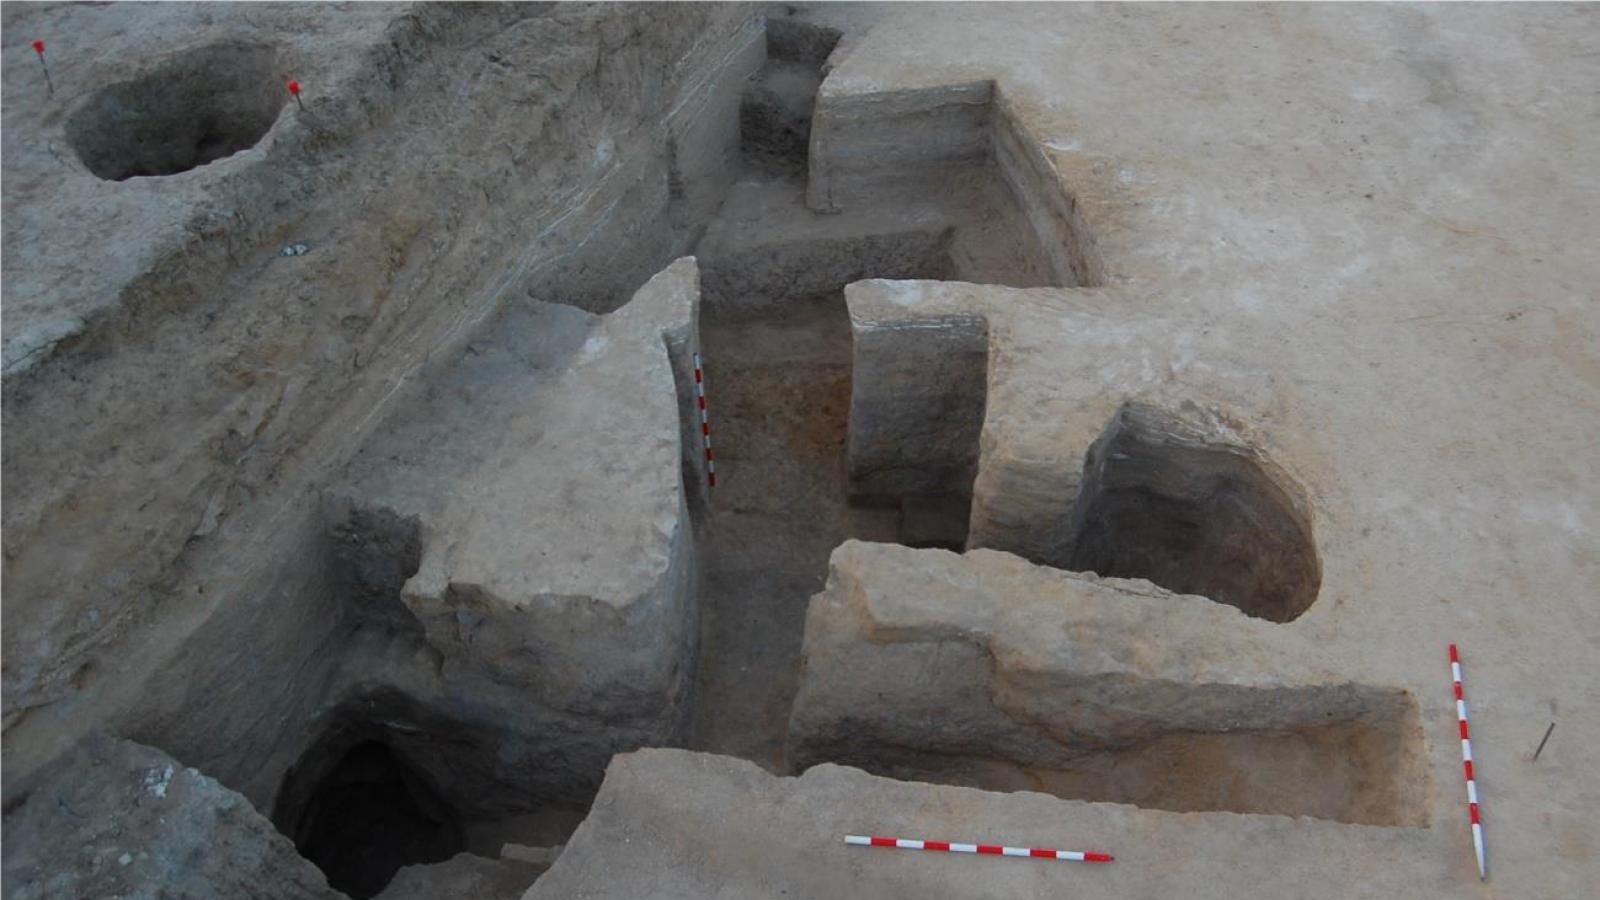 Hallan un acueducto de la época romana bajo la cárcel de Carabanchel